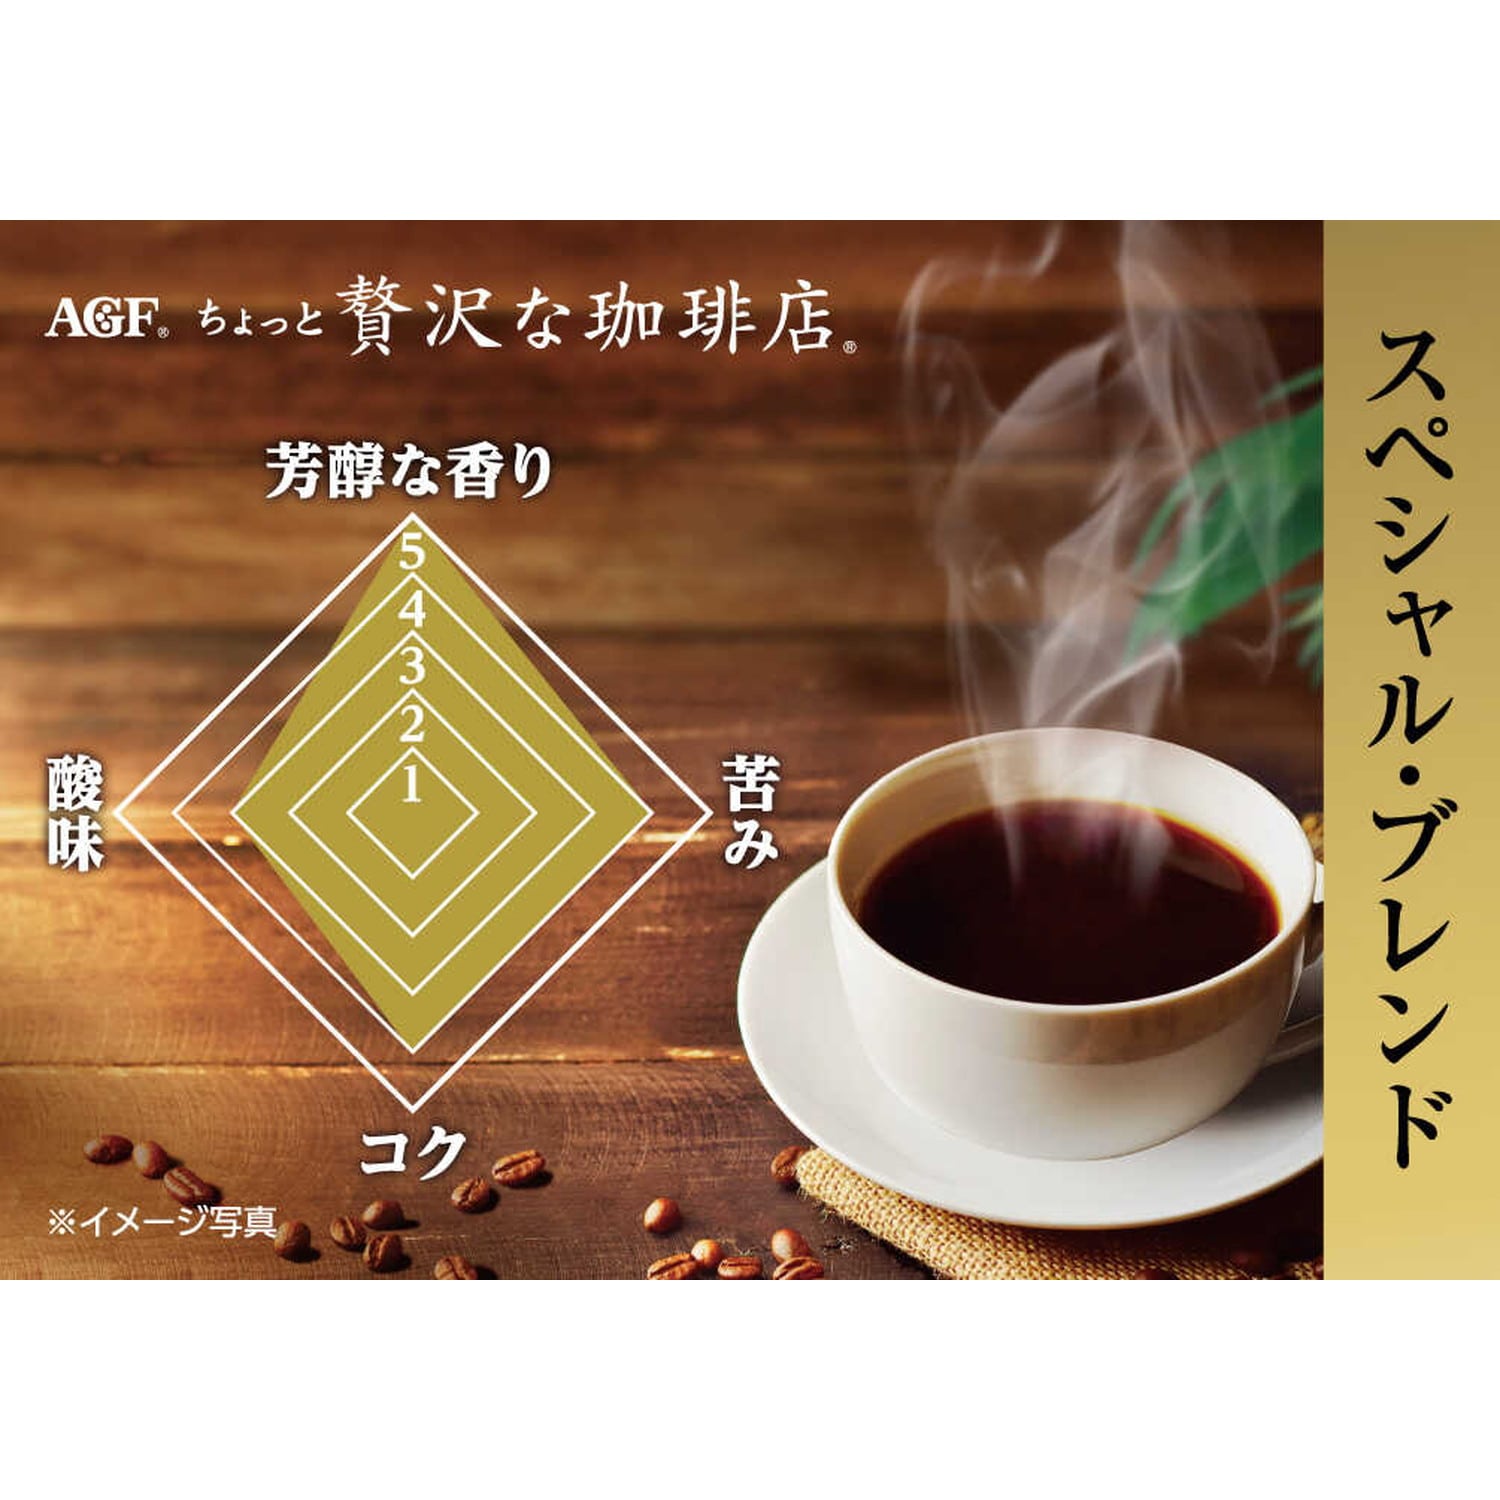 ◆味の素AGF ちょっと贅沢な珈琲店 スペシャル・ブレンド瓶 80g【12個セット】